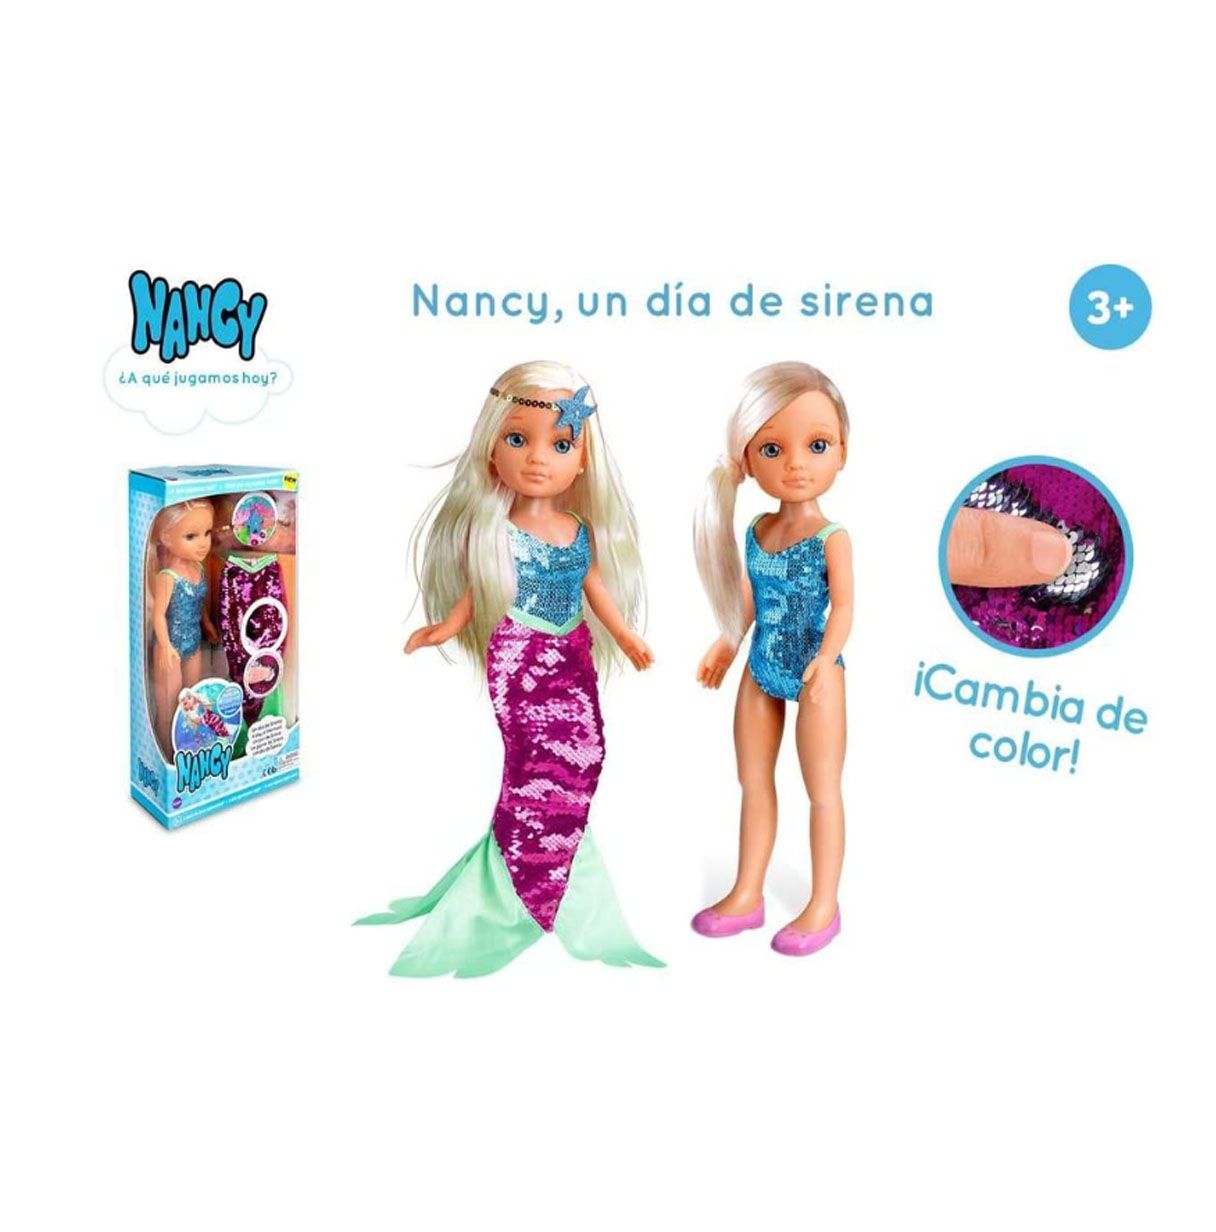 nancy - un día de sirena, juguete infantil muñeca con un bañador y un vestido de cola de sirena de lentejuelas reversibles que c